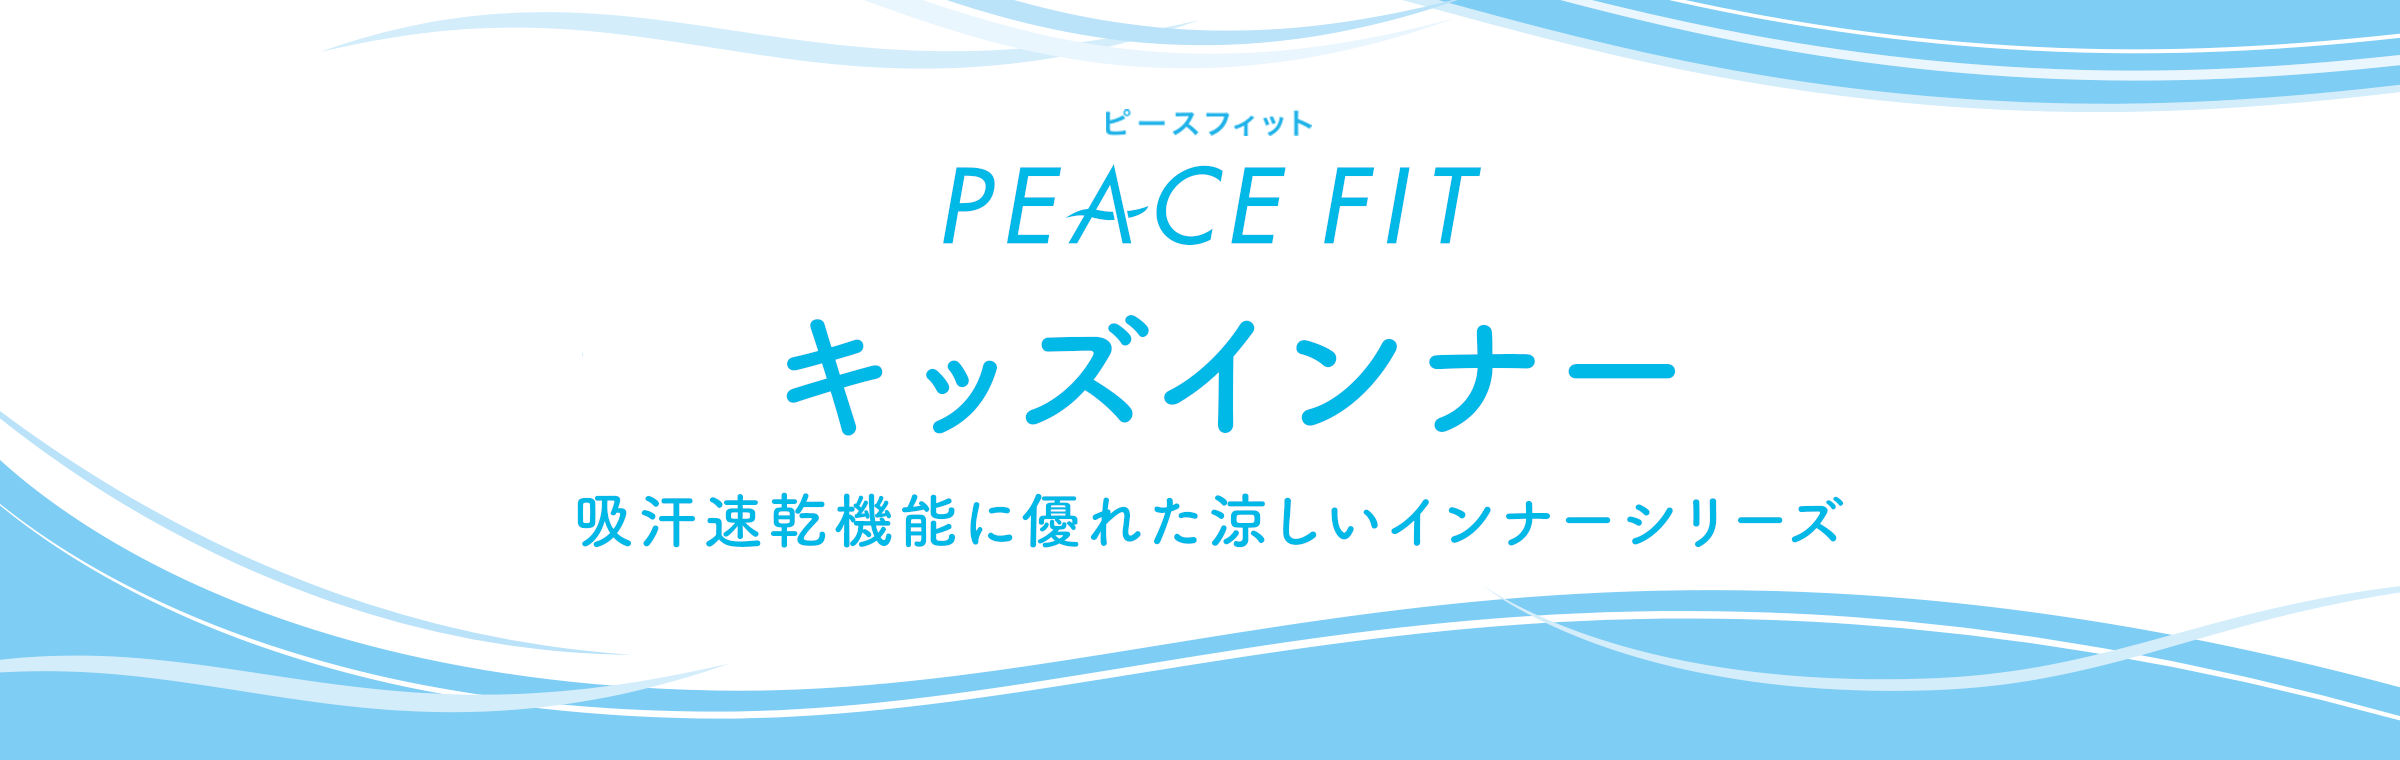 PEACE FIT 涼感キッズインナー 吸汗速乾機能に優れた涼しいインナーシリーズ